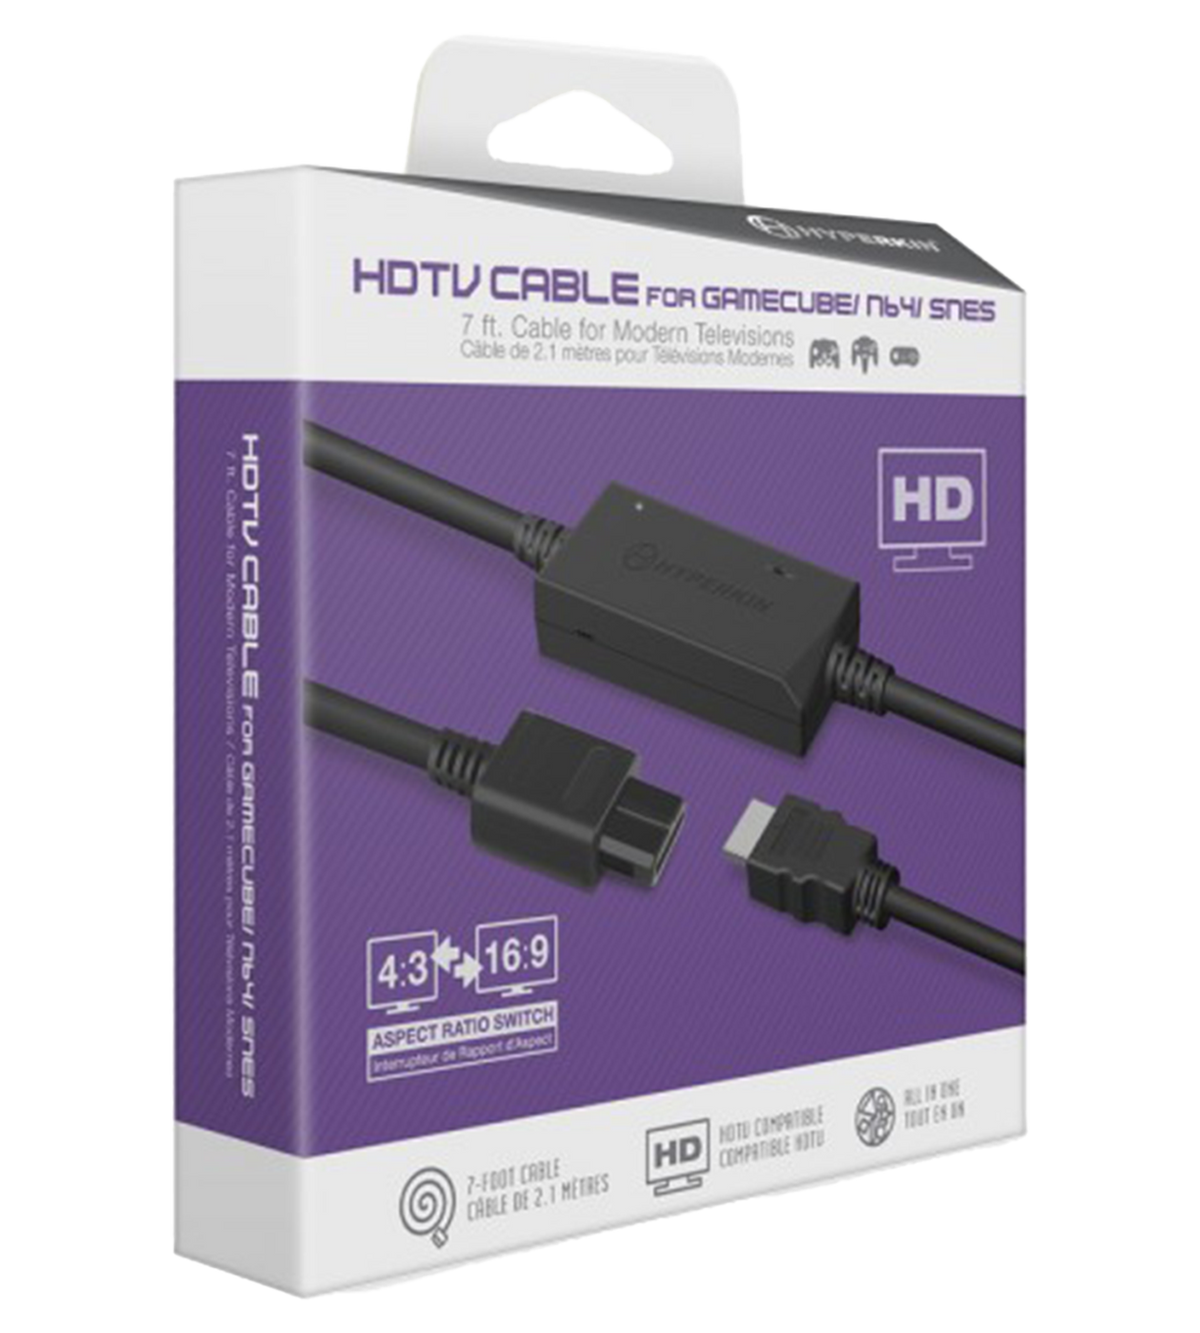 Økologi overraskelse Vejfremstillingsproces Hyperkin Nintendo 64/SNES/GameCube HDMI Link Cable – Limited Run Games